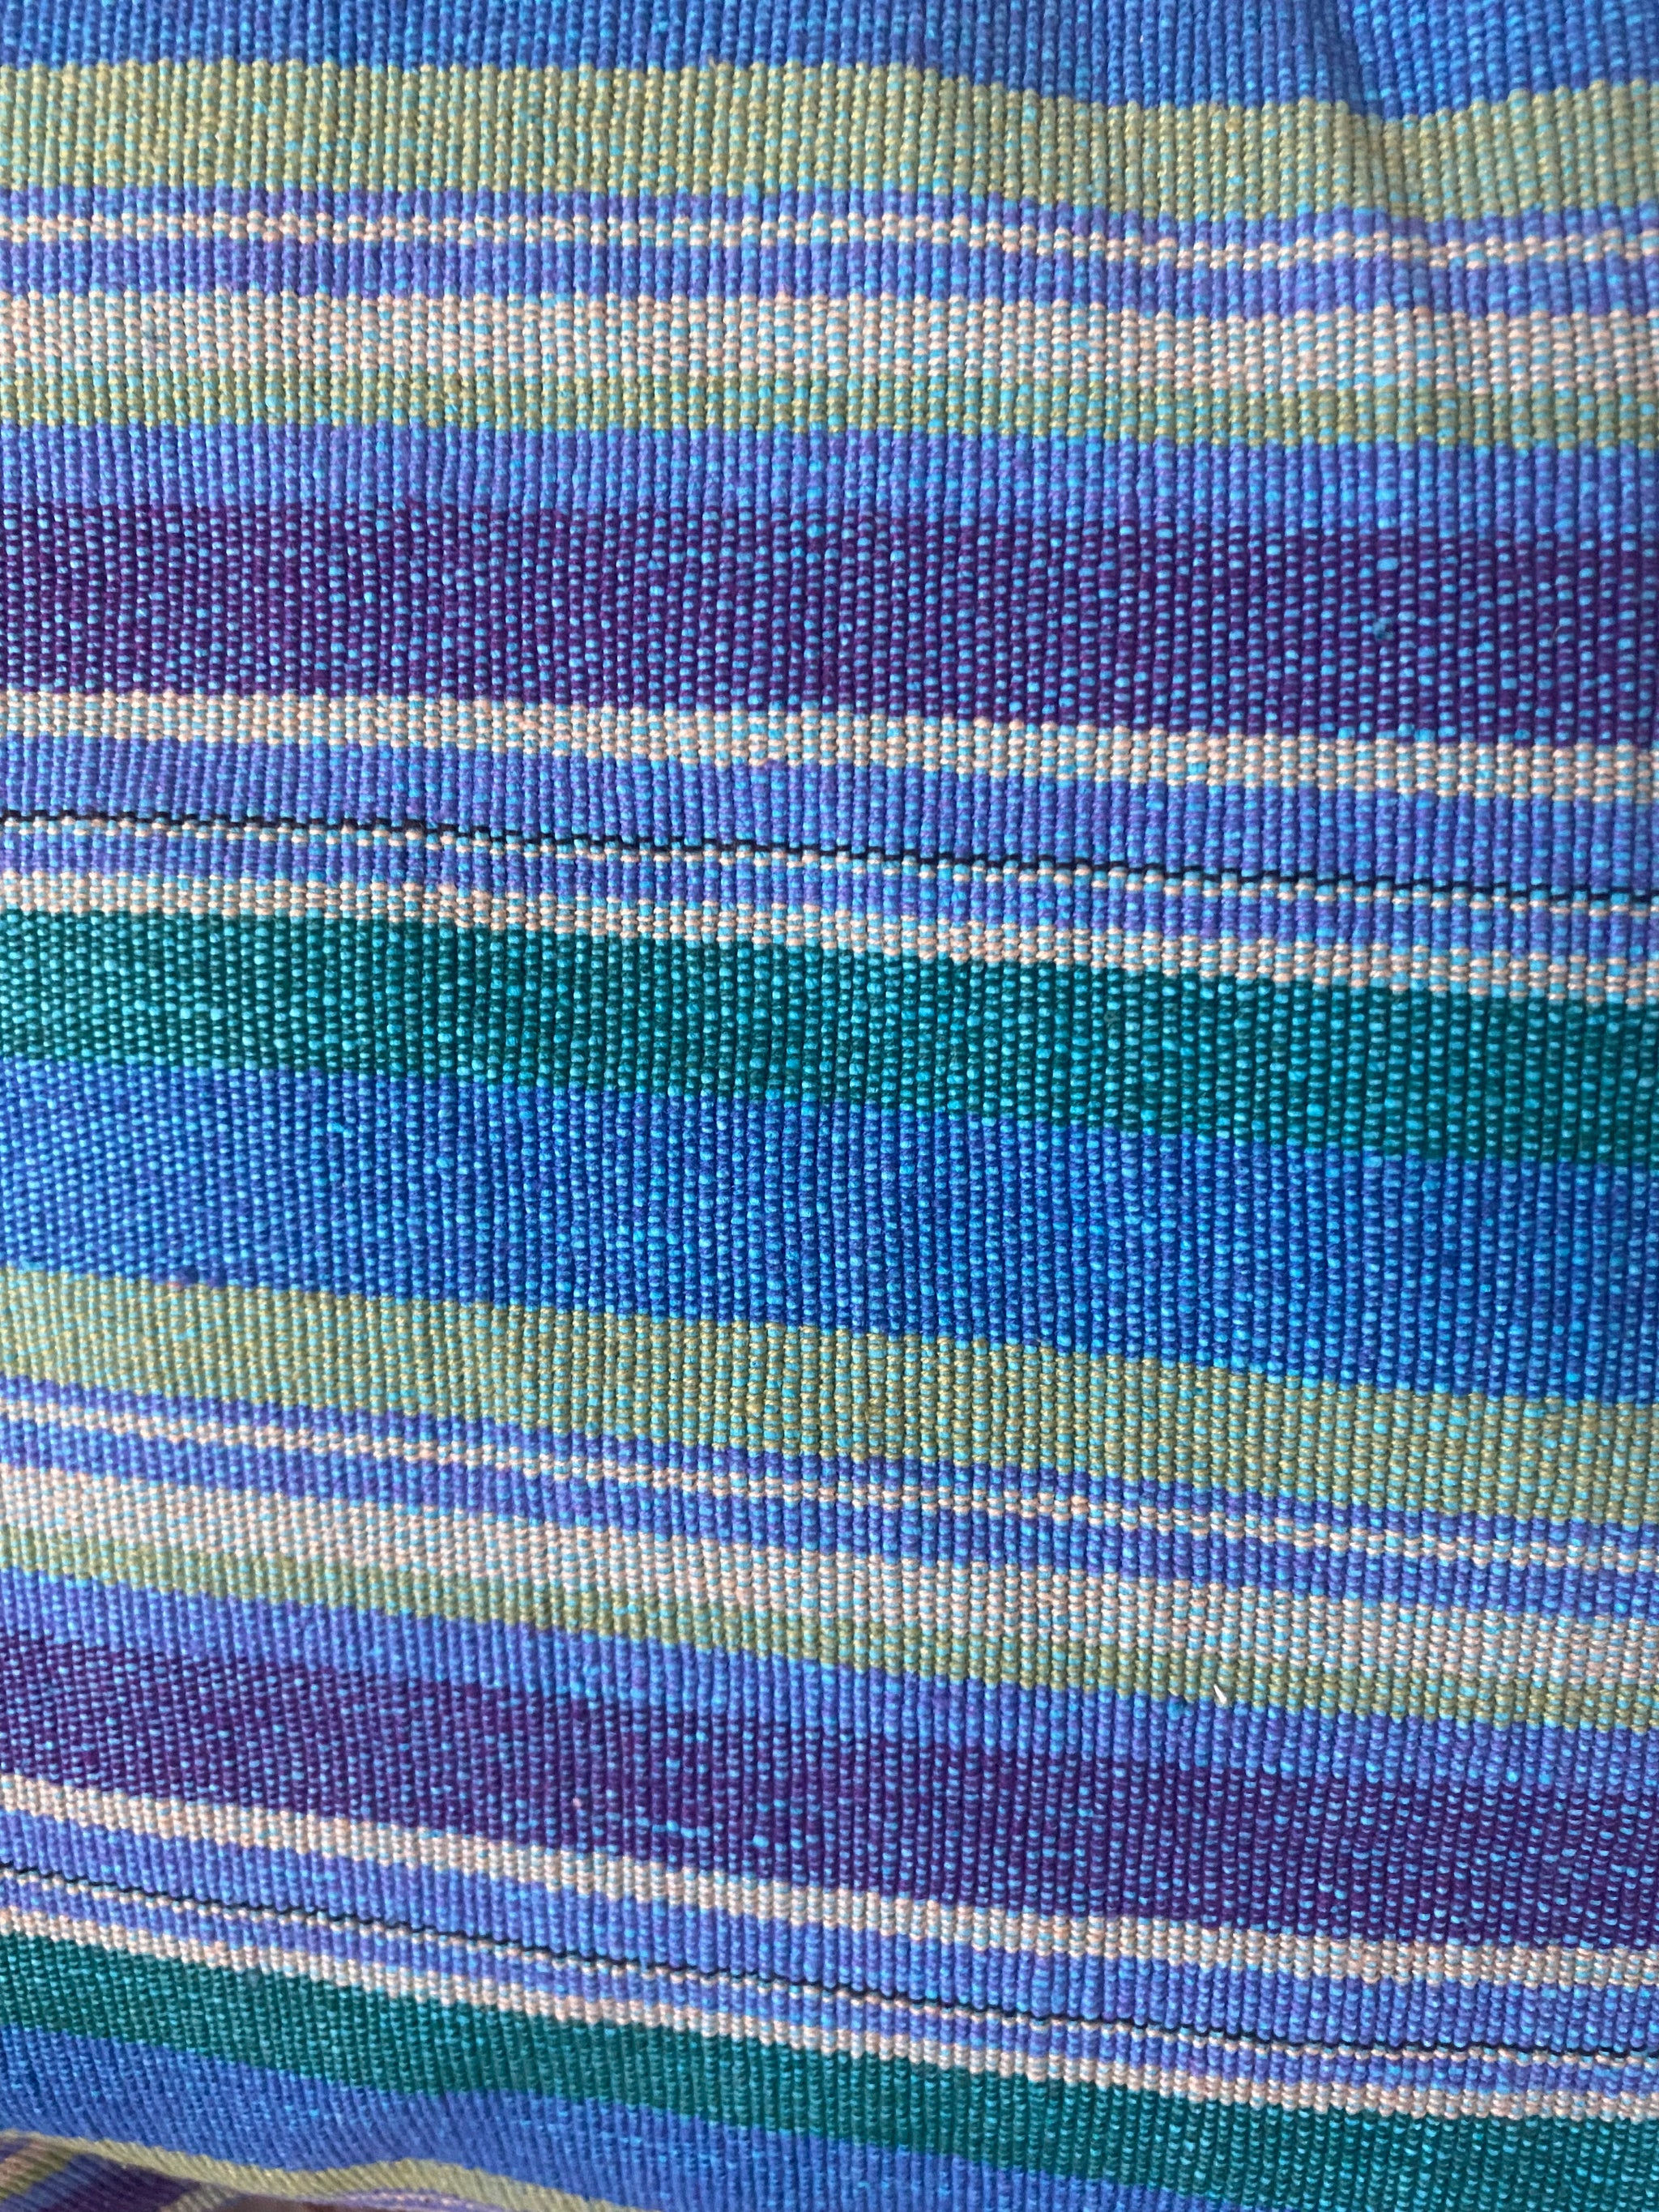 Fair Trade Cushion blue collection